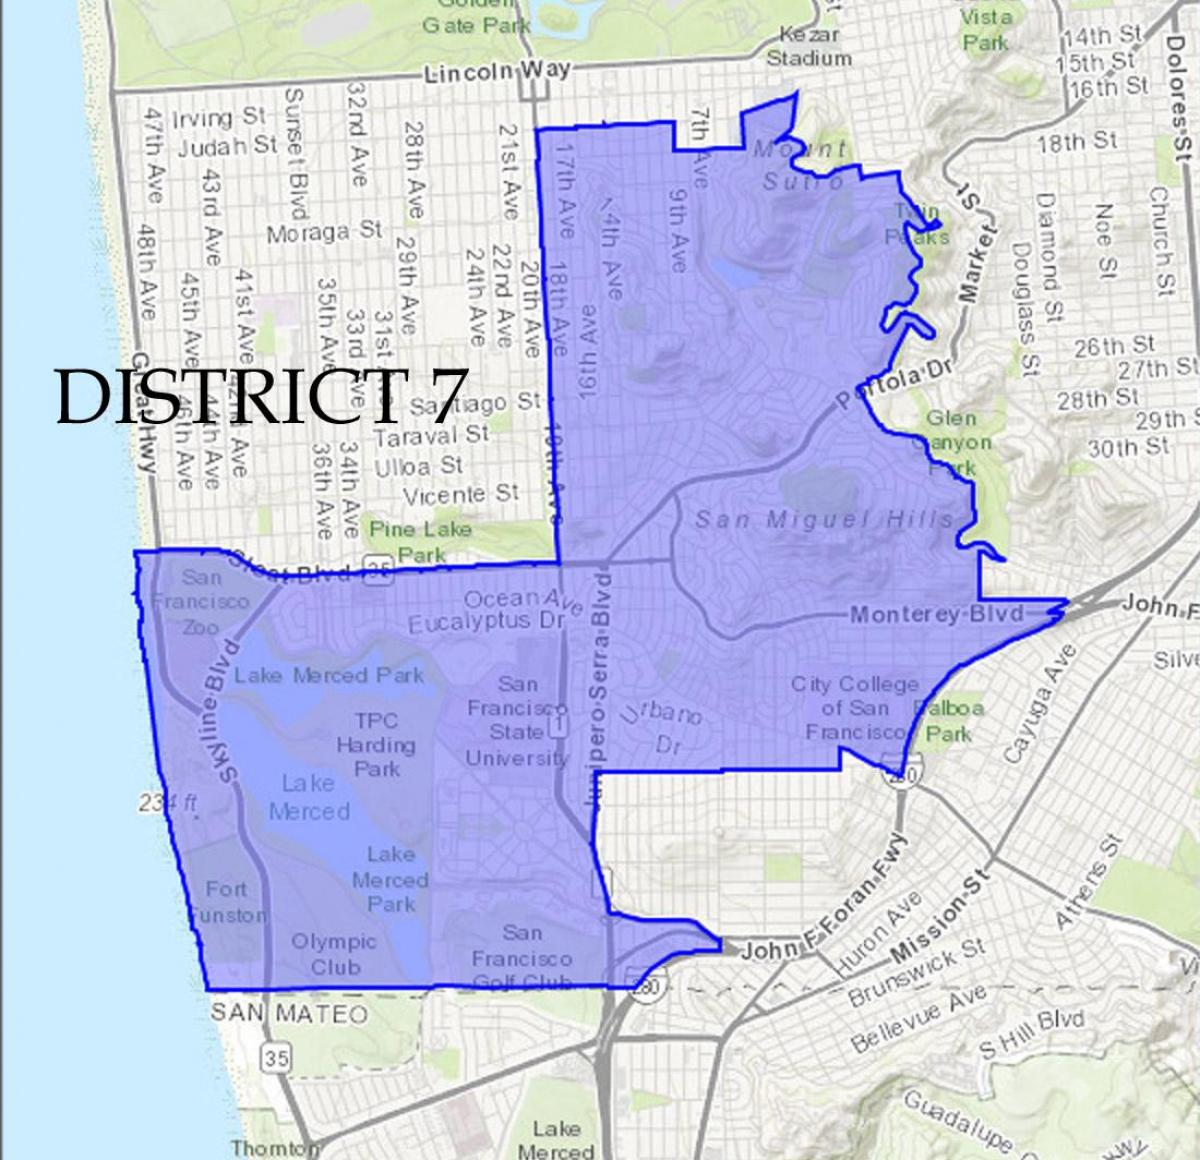 Mapa ng San Francisco distrito 7 